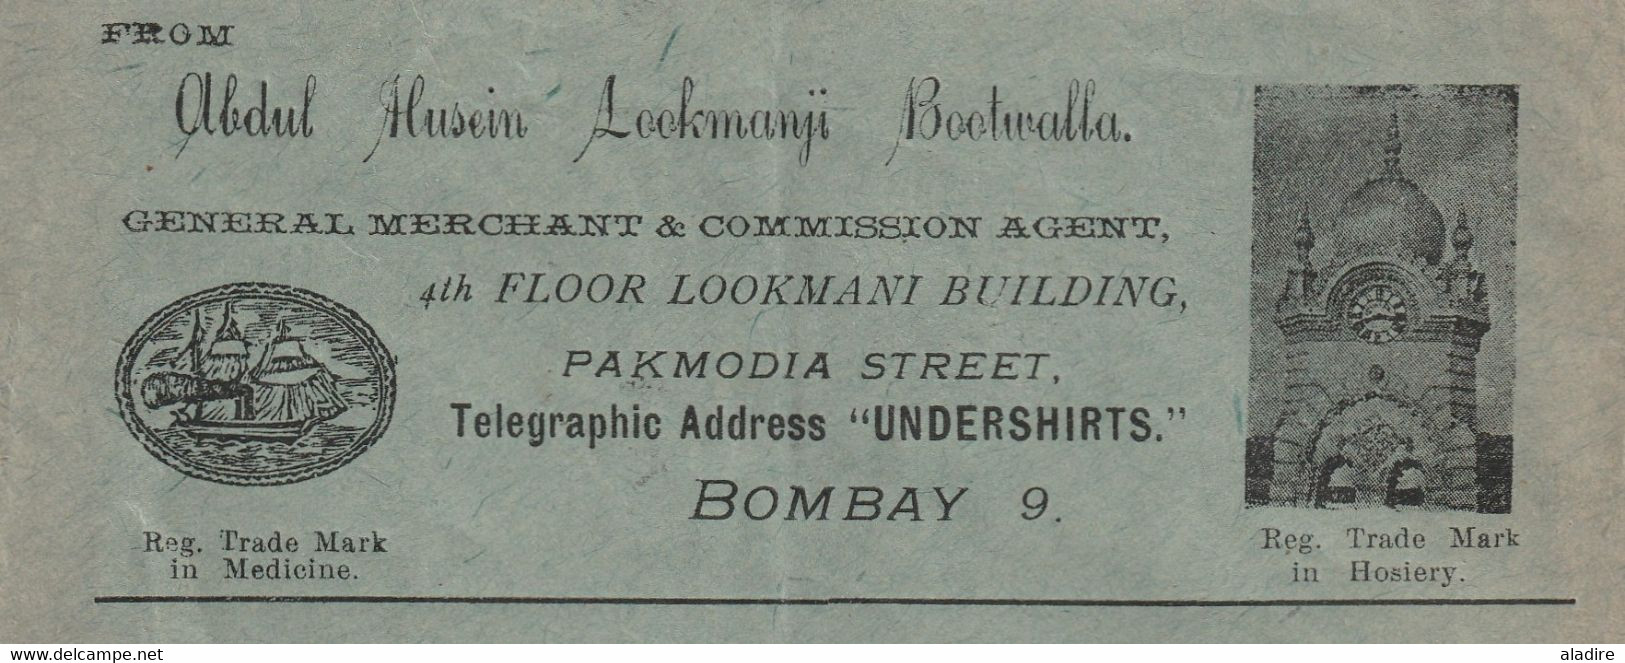 1925 - Enveloppe Commerciale Illustrée De Bombay Mumbai, Inde, GB Vers Berlin, Allemagne - Band Of 3 1 Anna Stamps - 1911-35  George V